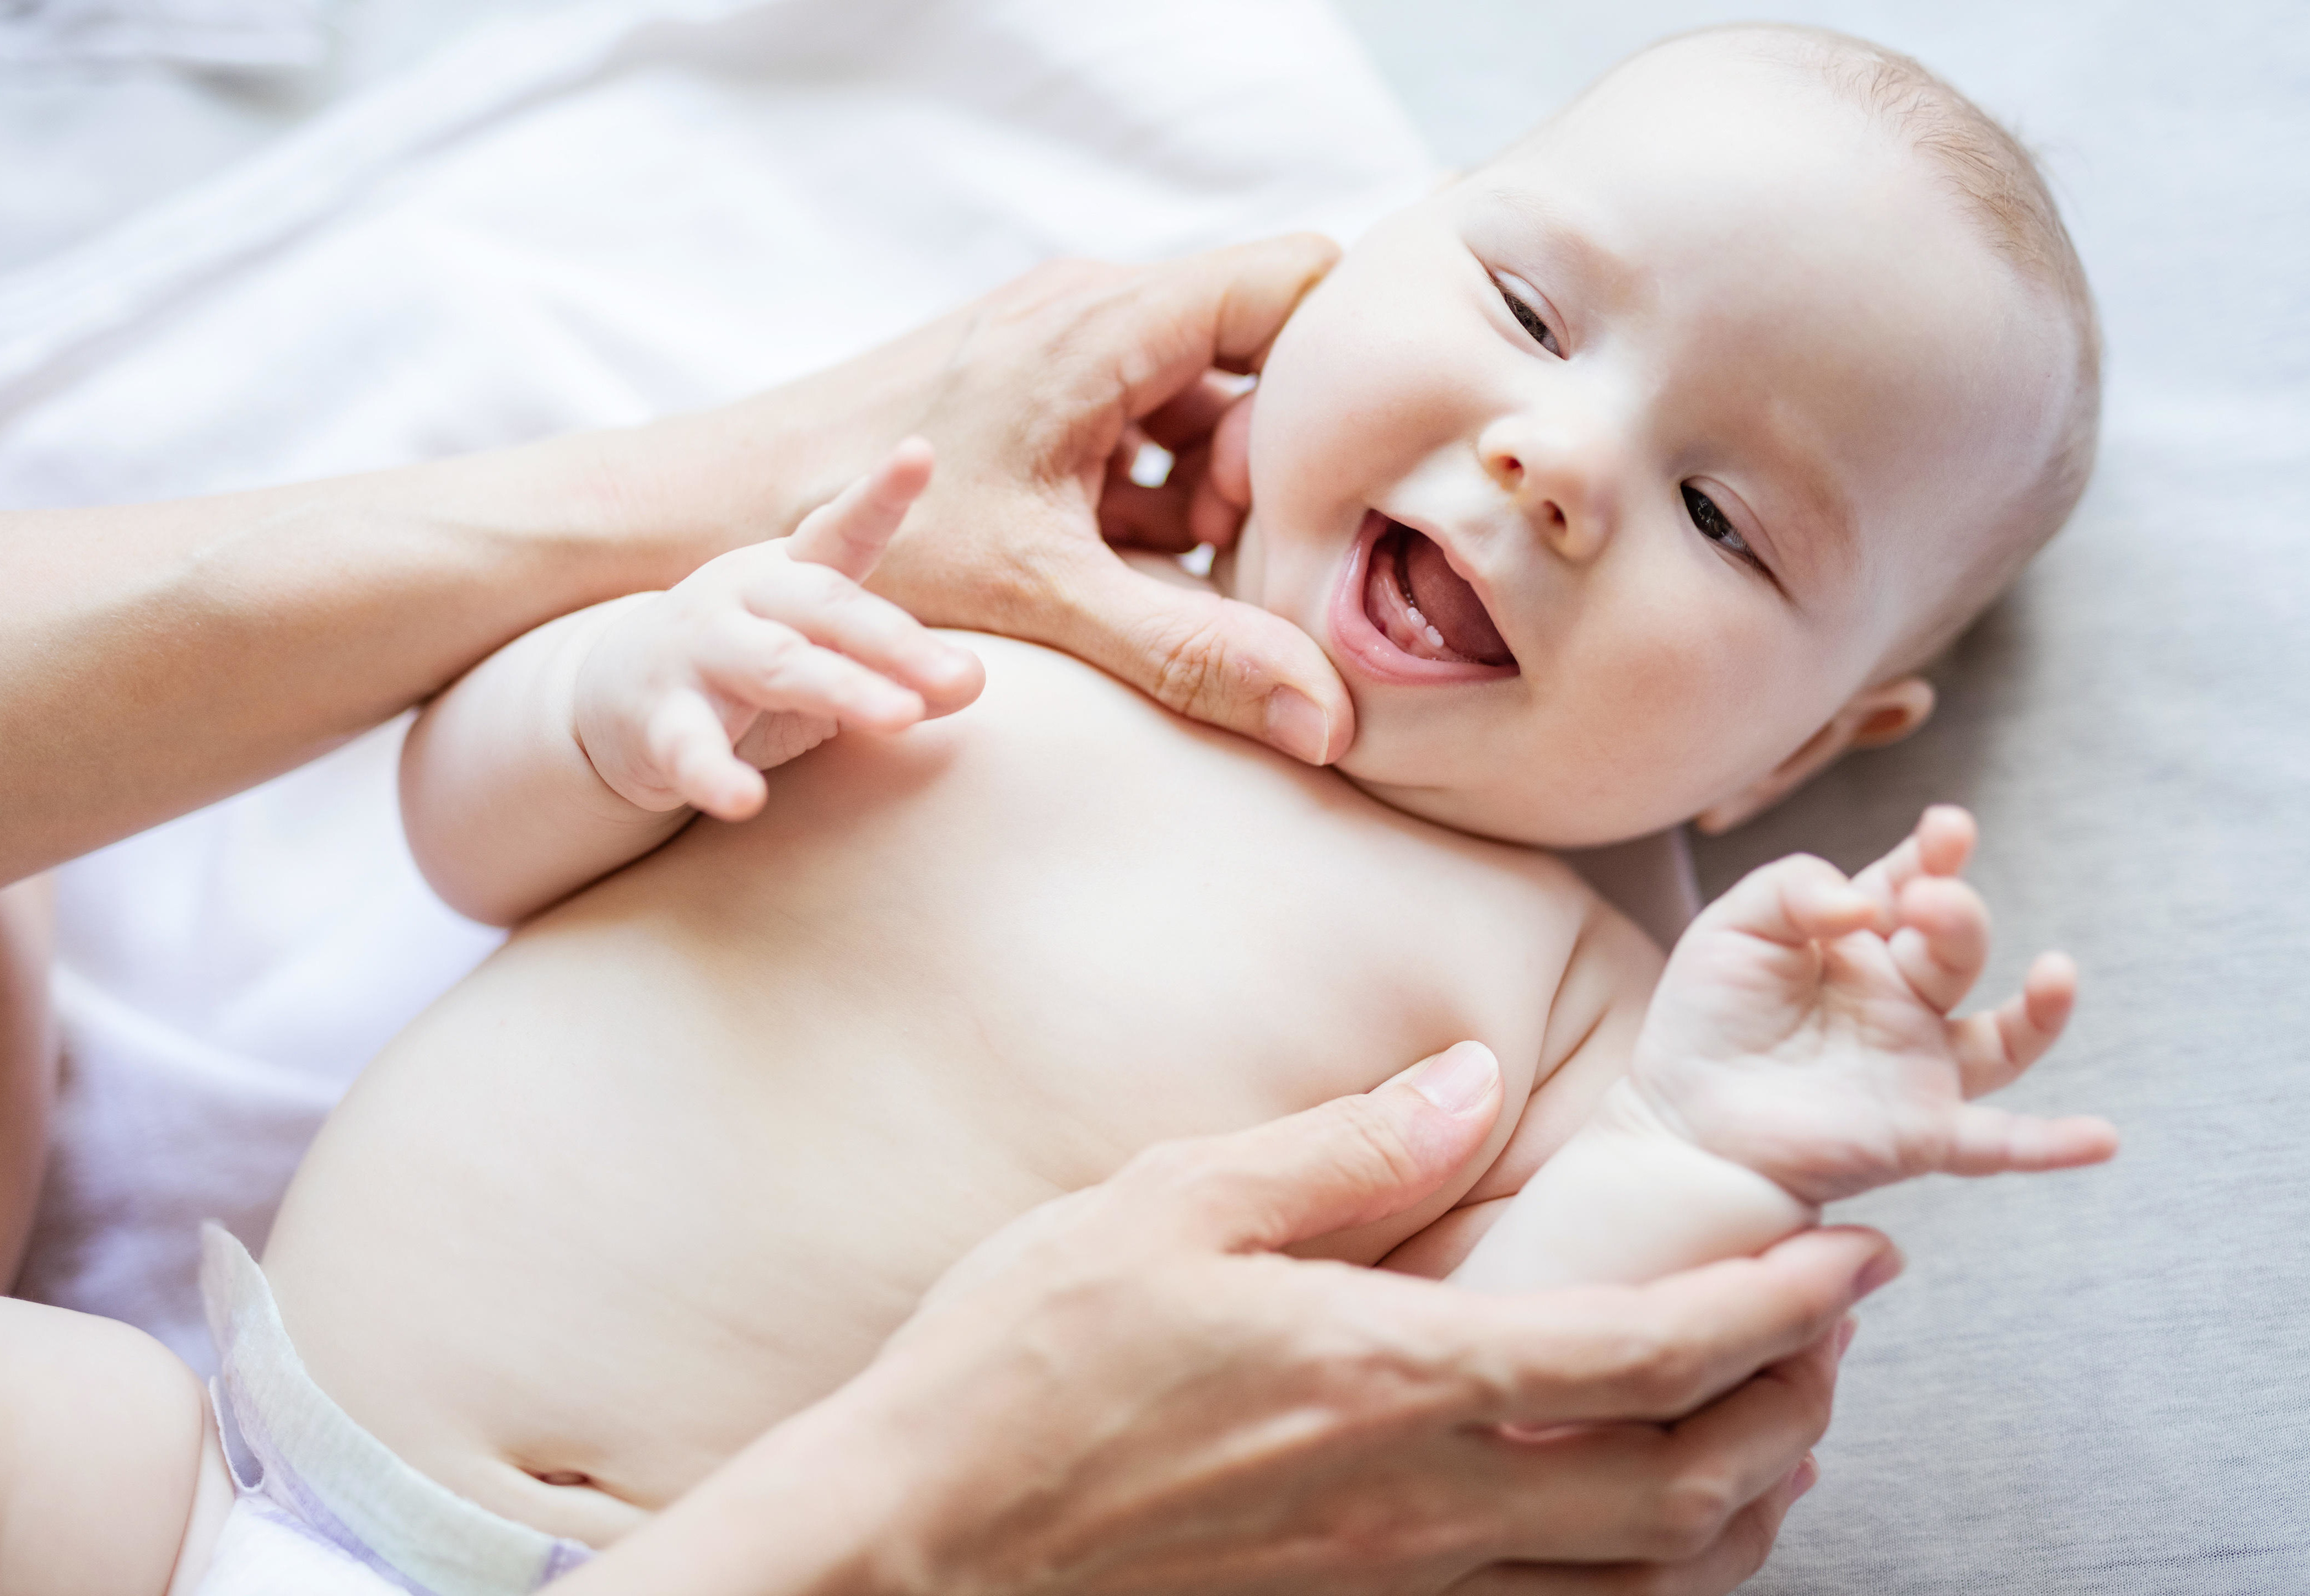 Симптомы короткой уздечки можно заметить уже в первые дни жизни новорожденного: